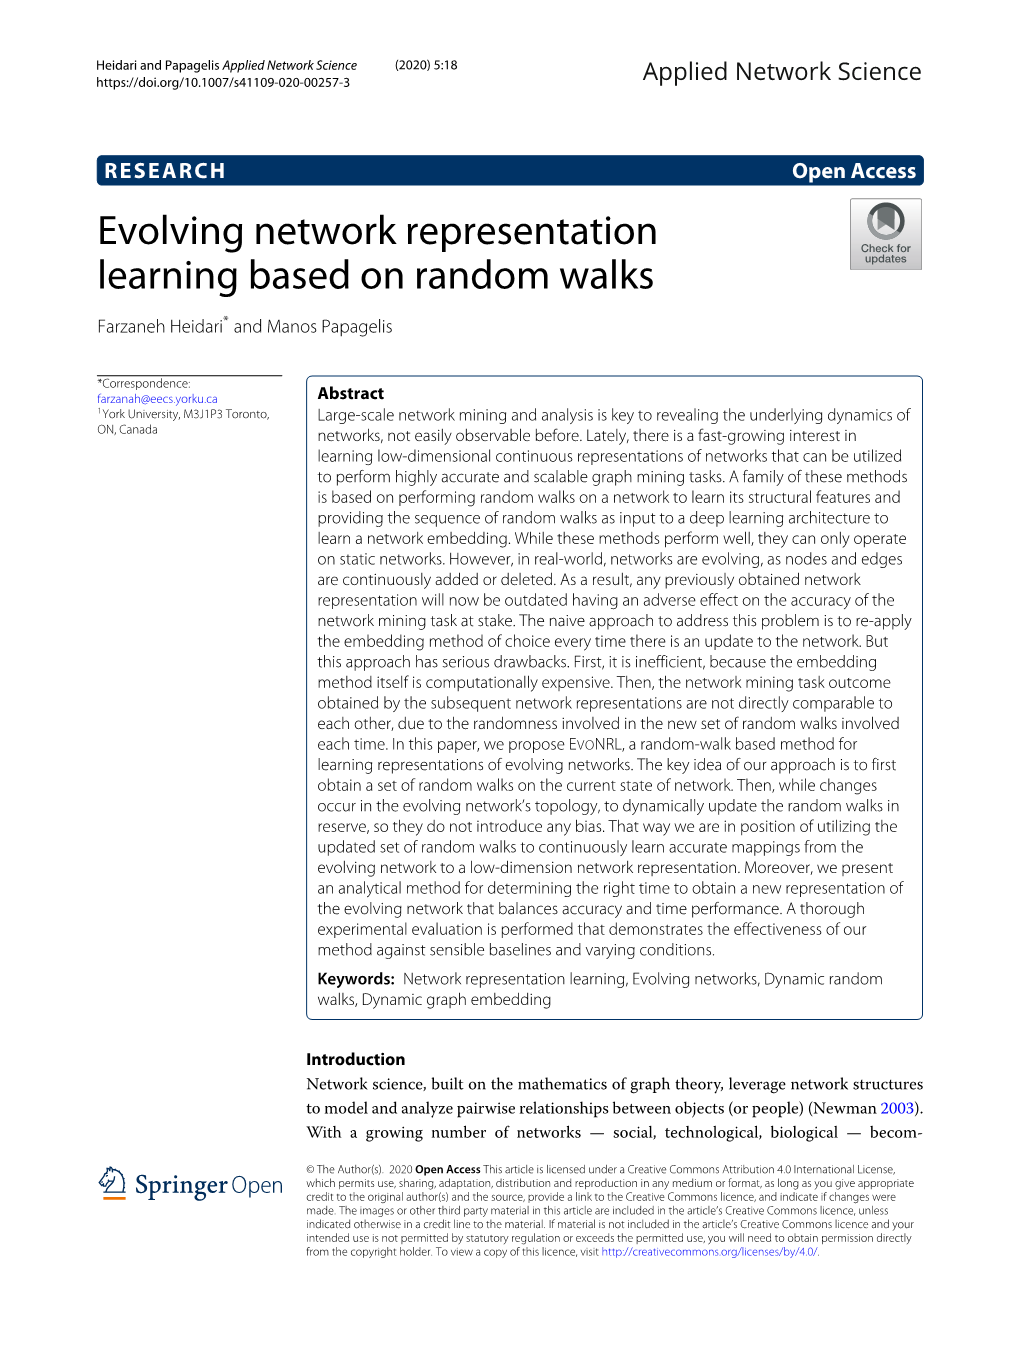 Evolving Network Representation Learning Based on Random Walks